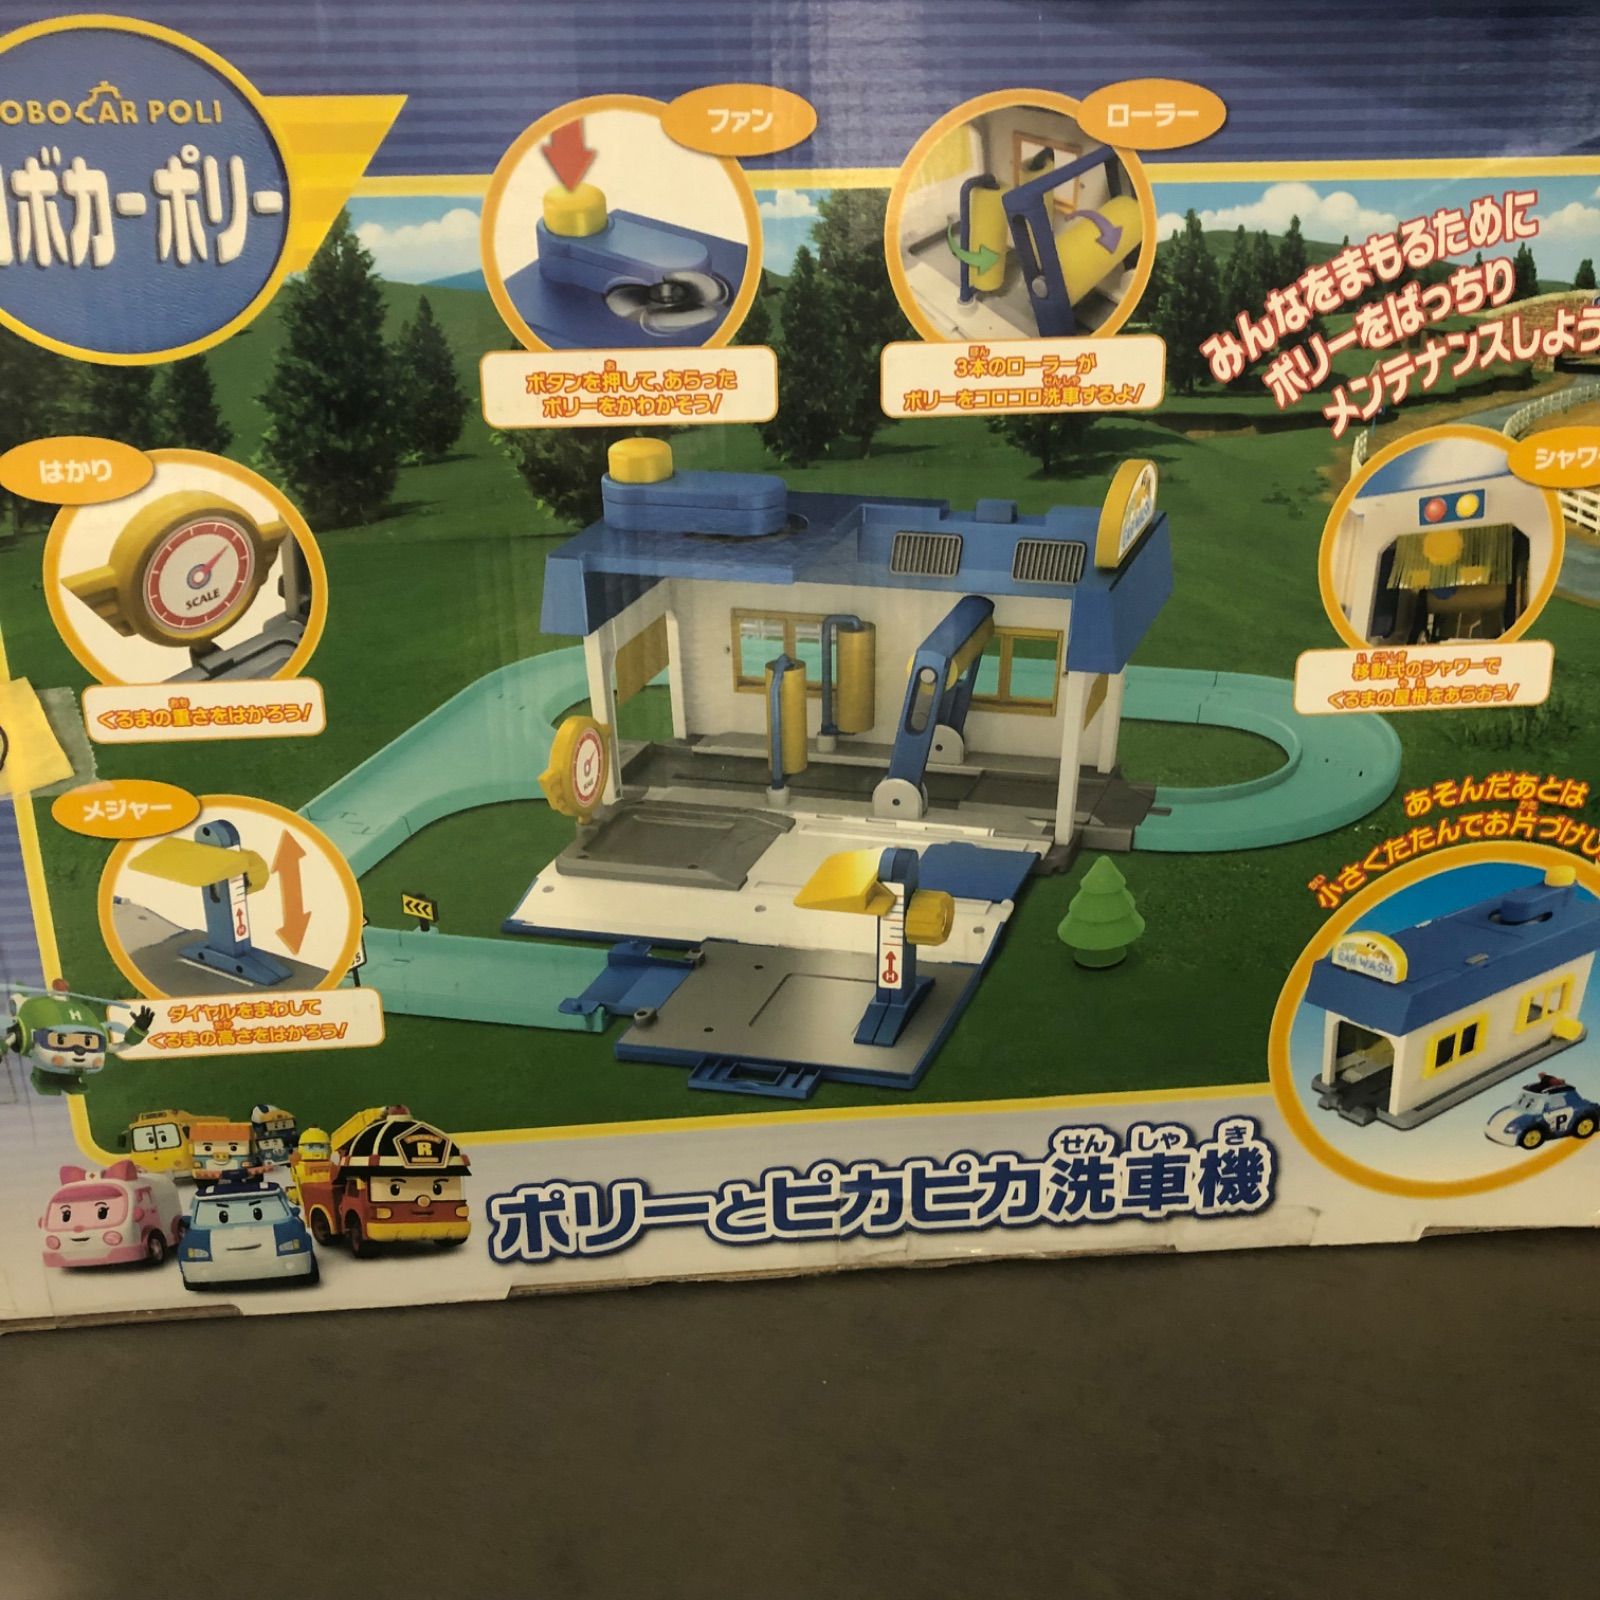 ロボカーポリー 洗車場&リサイクルセンター セット売り - 知育玩具